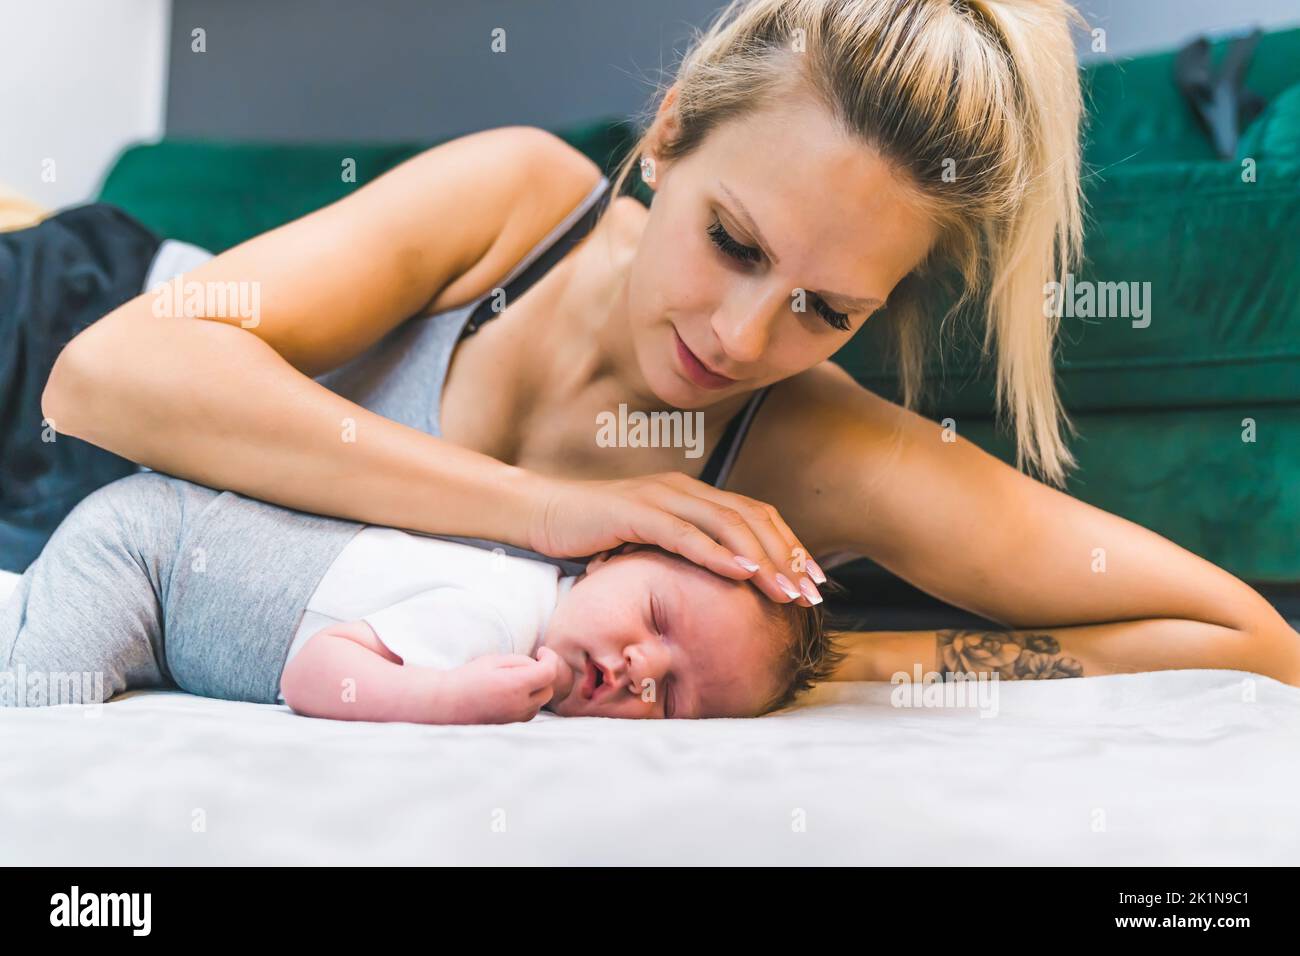 Blonde weiße Frau, die auf der Seite auf dem Boden liegt und den Kopf ihres kleinen Jungen streichelt, der sich neben ihr auf einer Decke ausruht. Fürsorgliche, zärtliche Mutter. Horizontale Innenaufnahme. Hochwertige Fotos Stockfoto